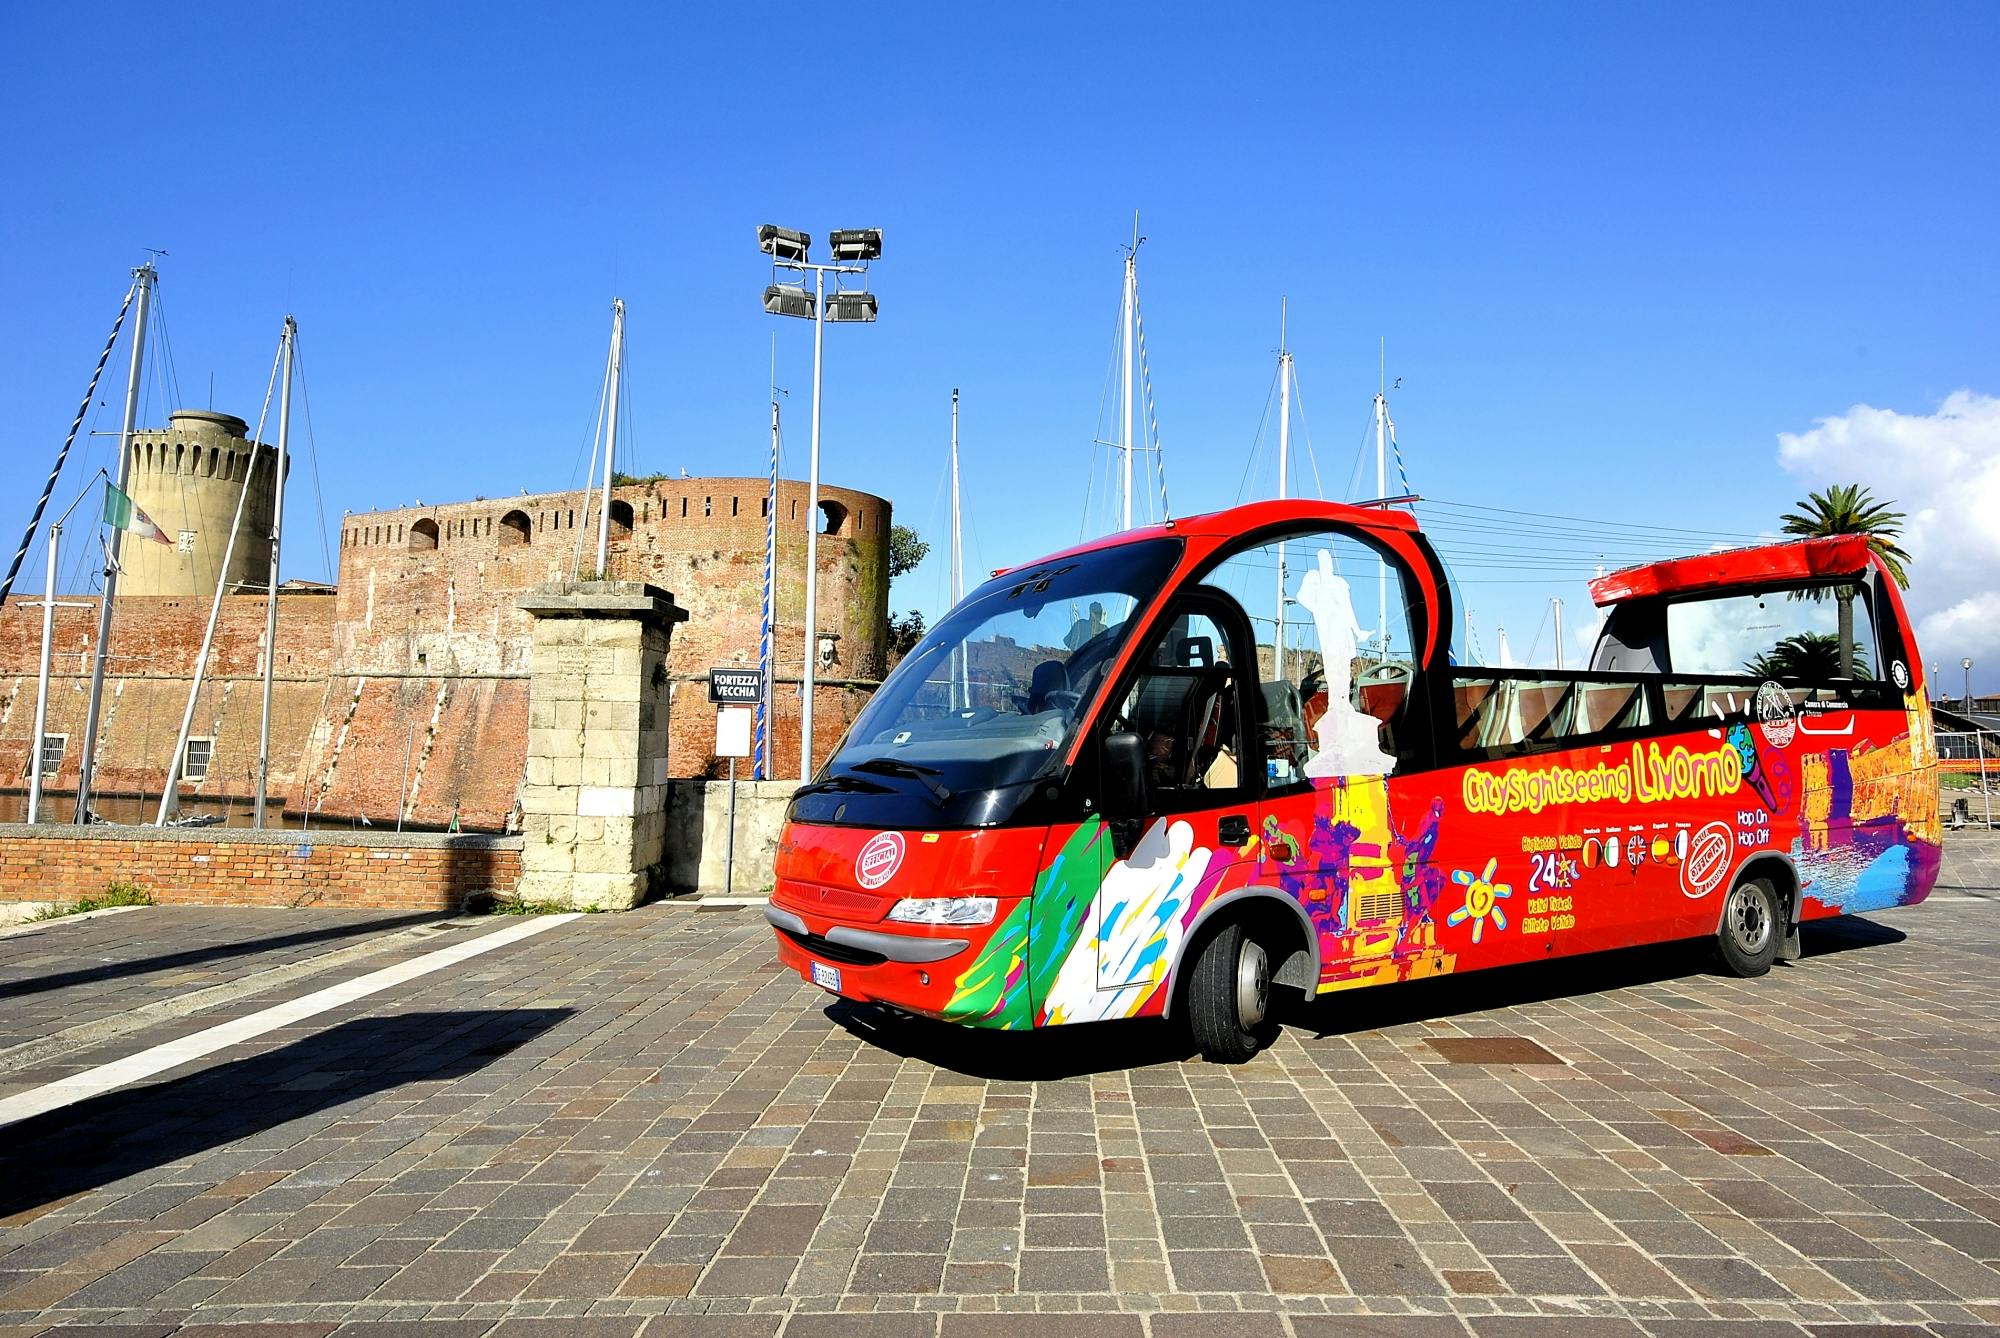 Biglietti 24 ore per bus "sali e scendi" di Livorno